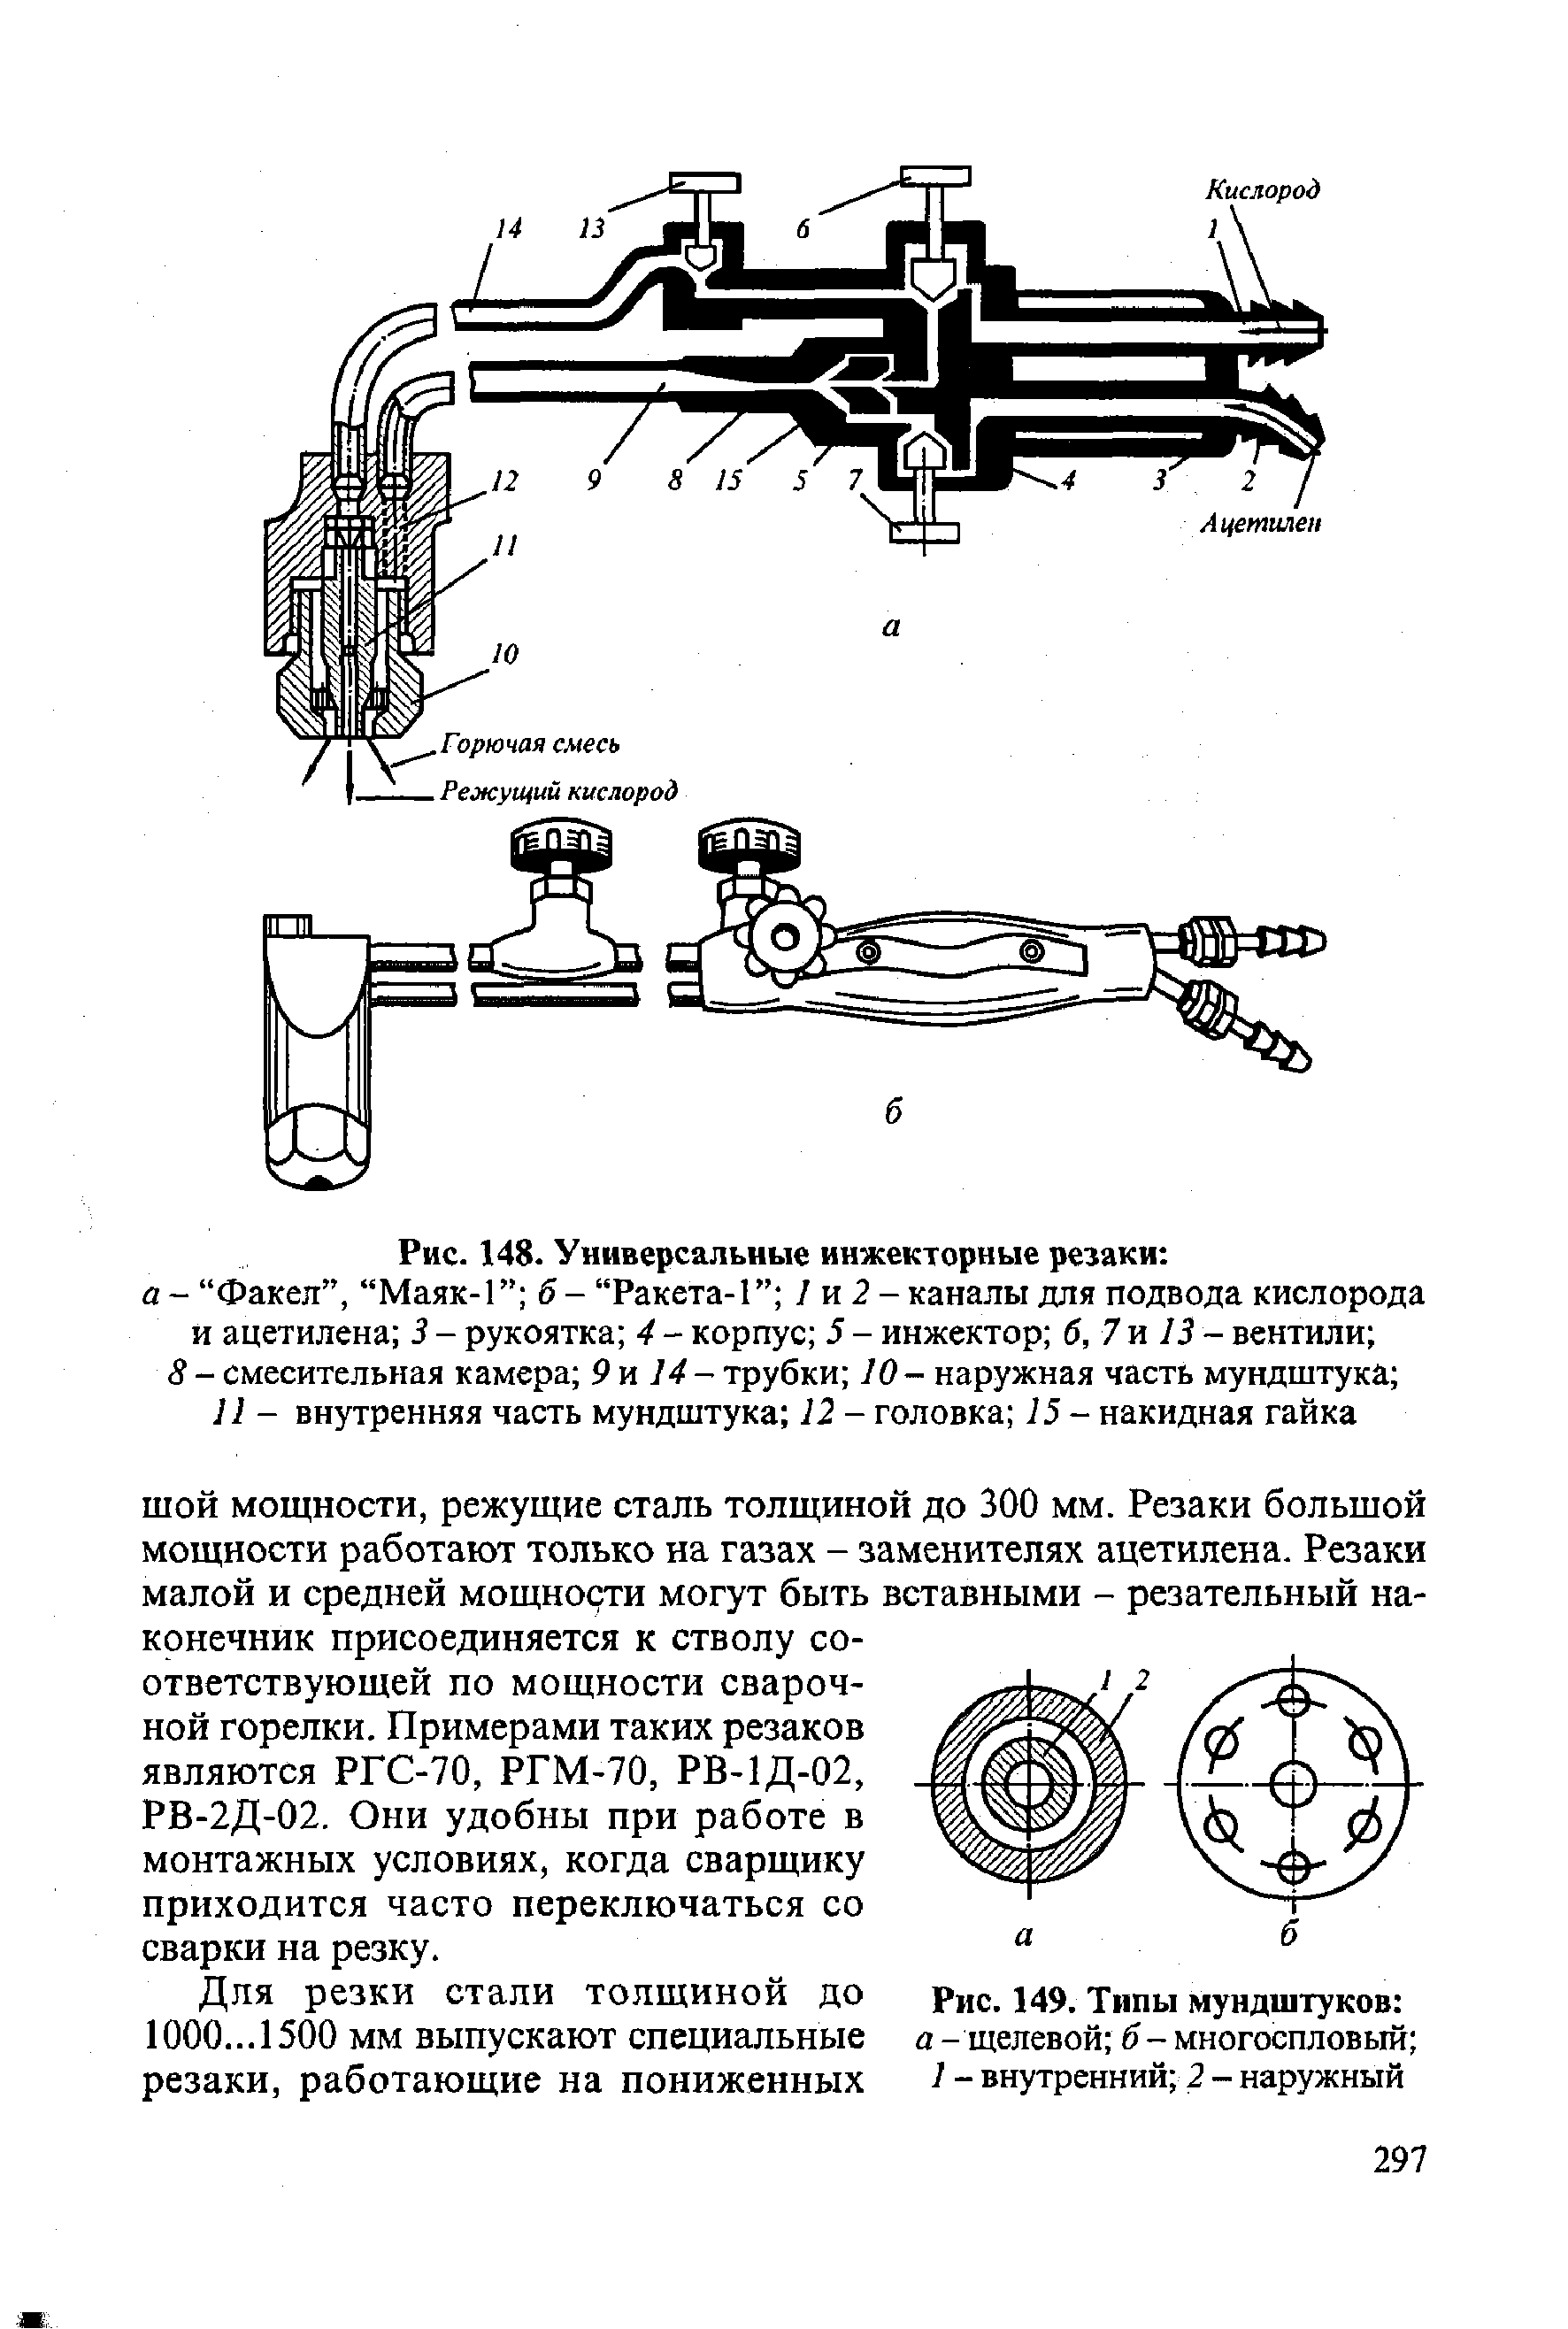 Рис. 148- Универсальные инжекторные резаки 
